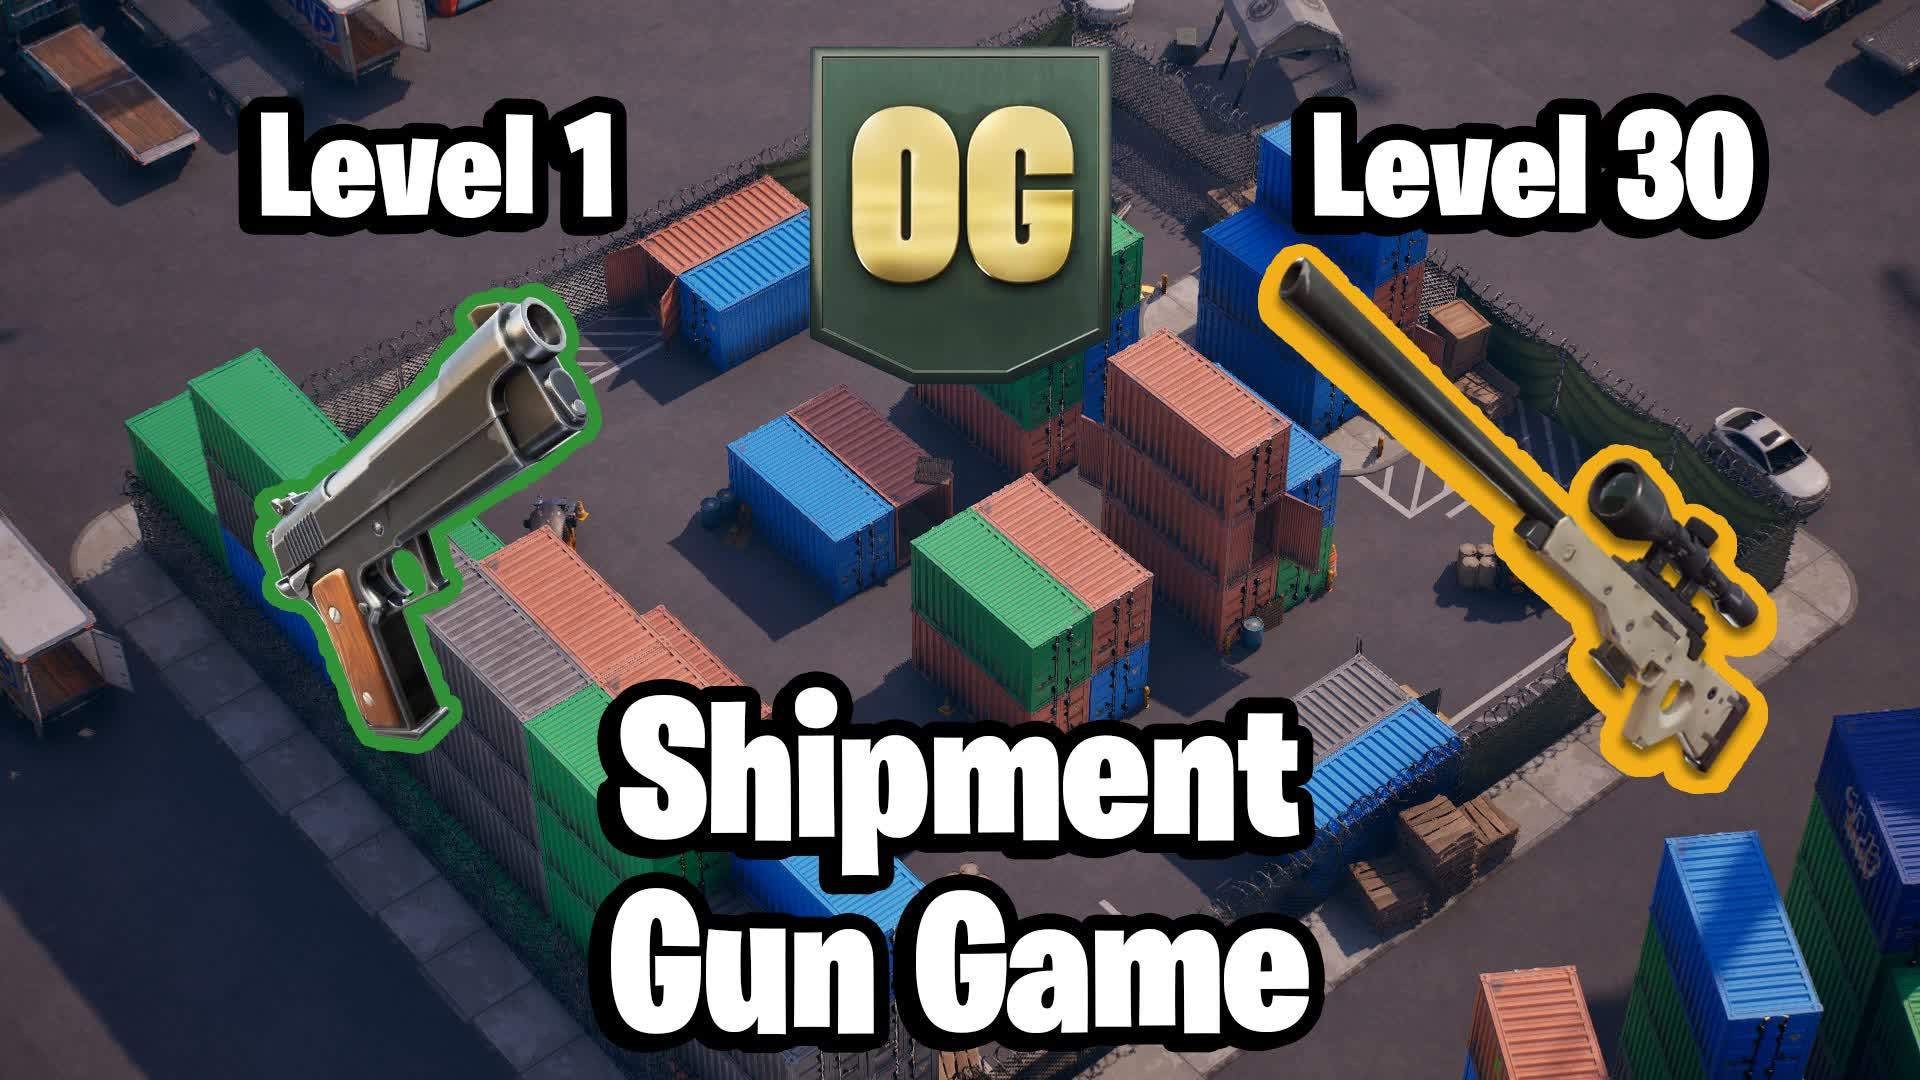 OG Shipment Gun Game